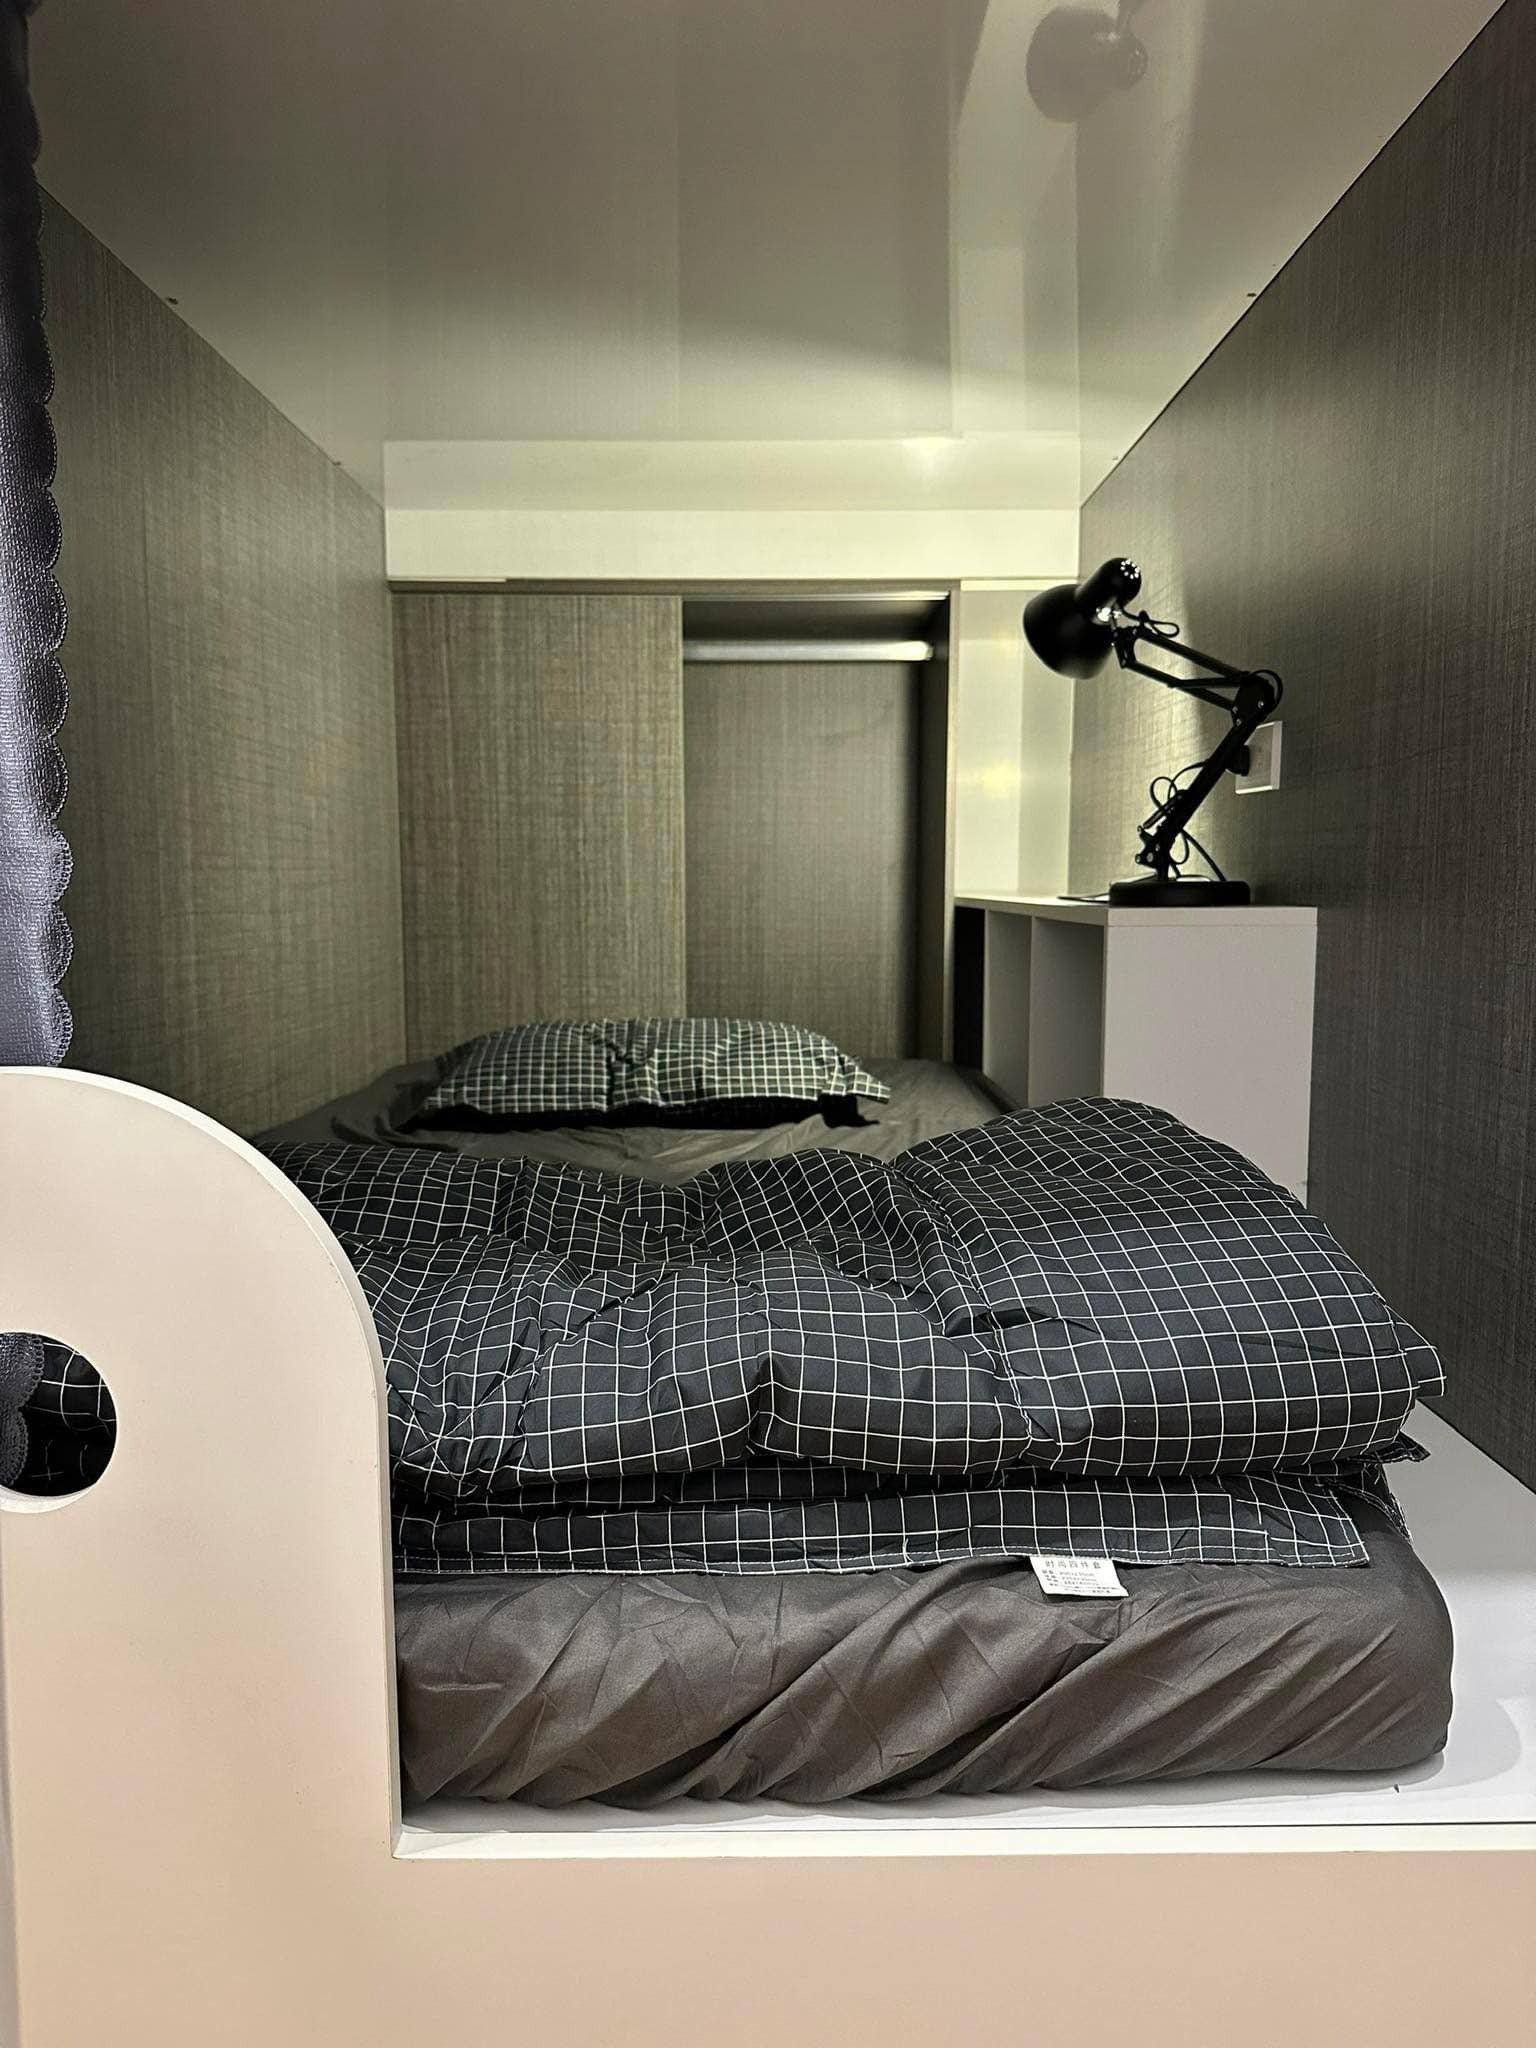 Phòng Trọ Sleepbox Có Những Mẫu Nào Đẹp, Được Yêu Thích Nhất Hiện Nay?